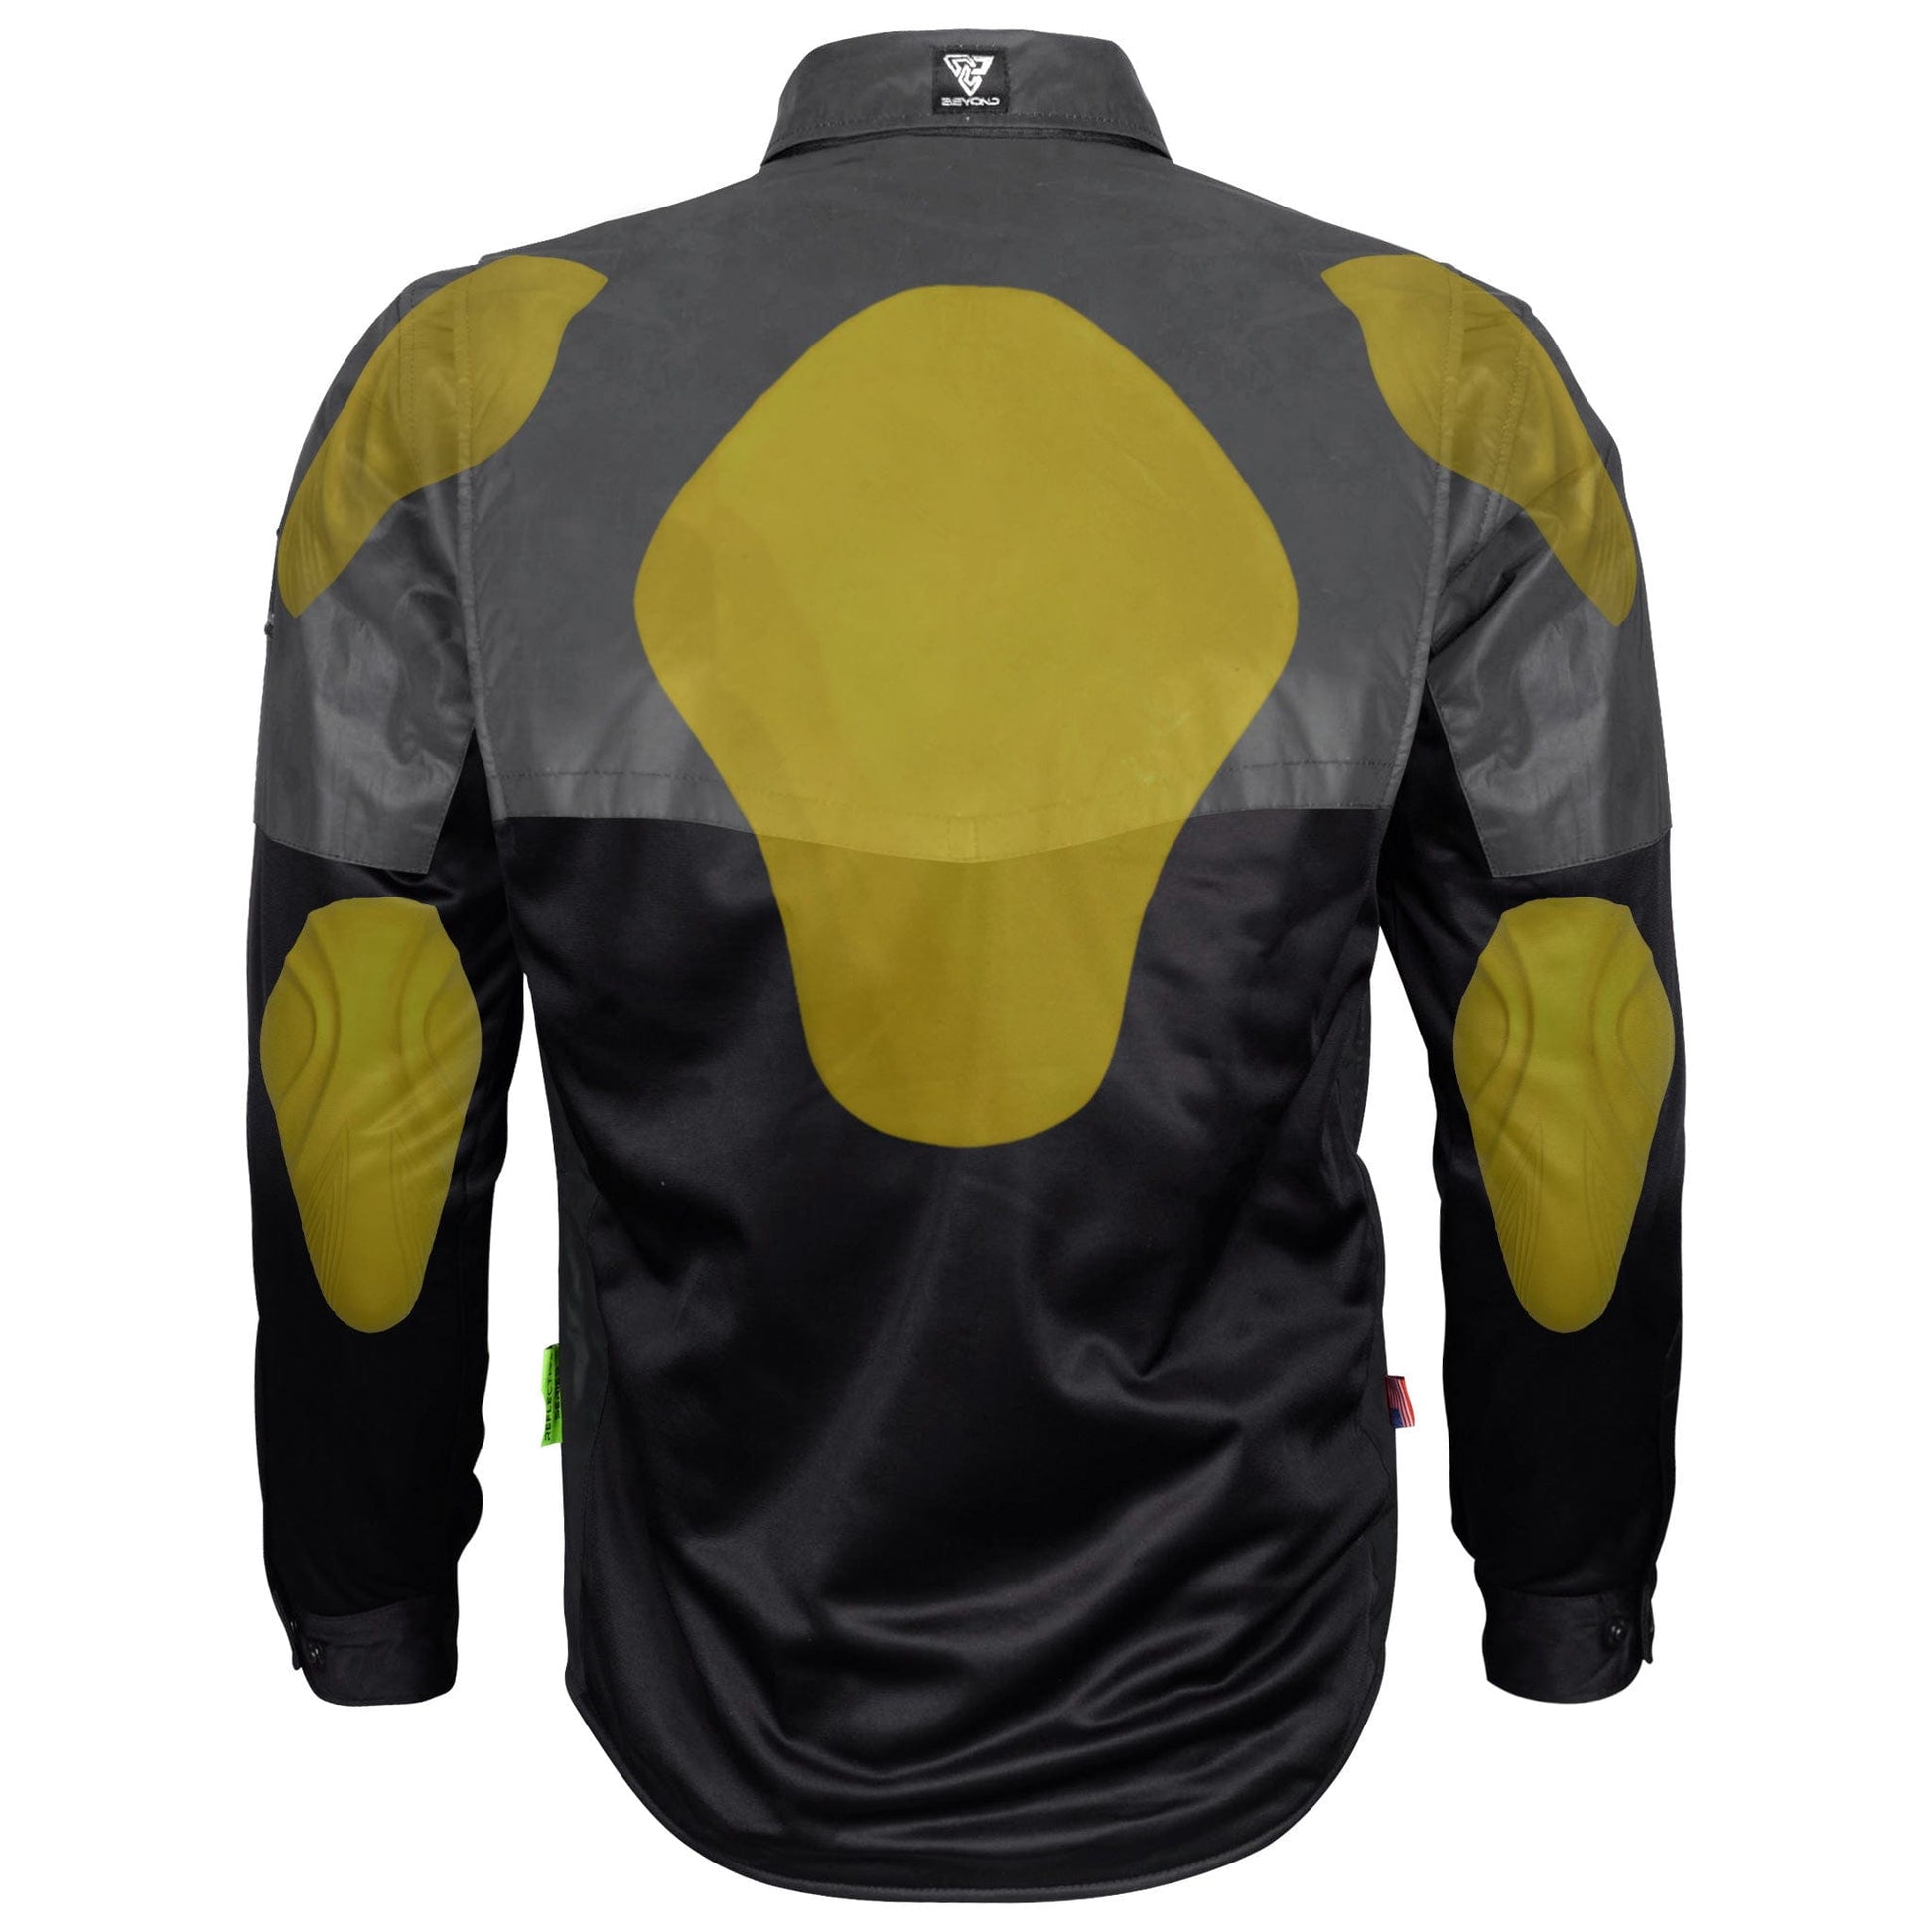 Ultra Reflective Shirt "Nightfall Nebula" - Black with Pads - REVRides